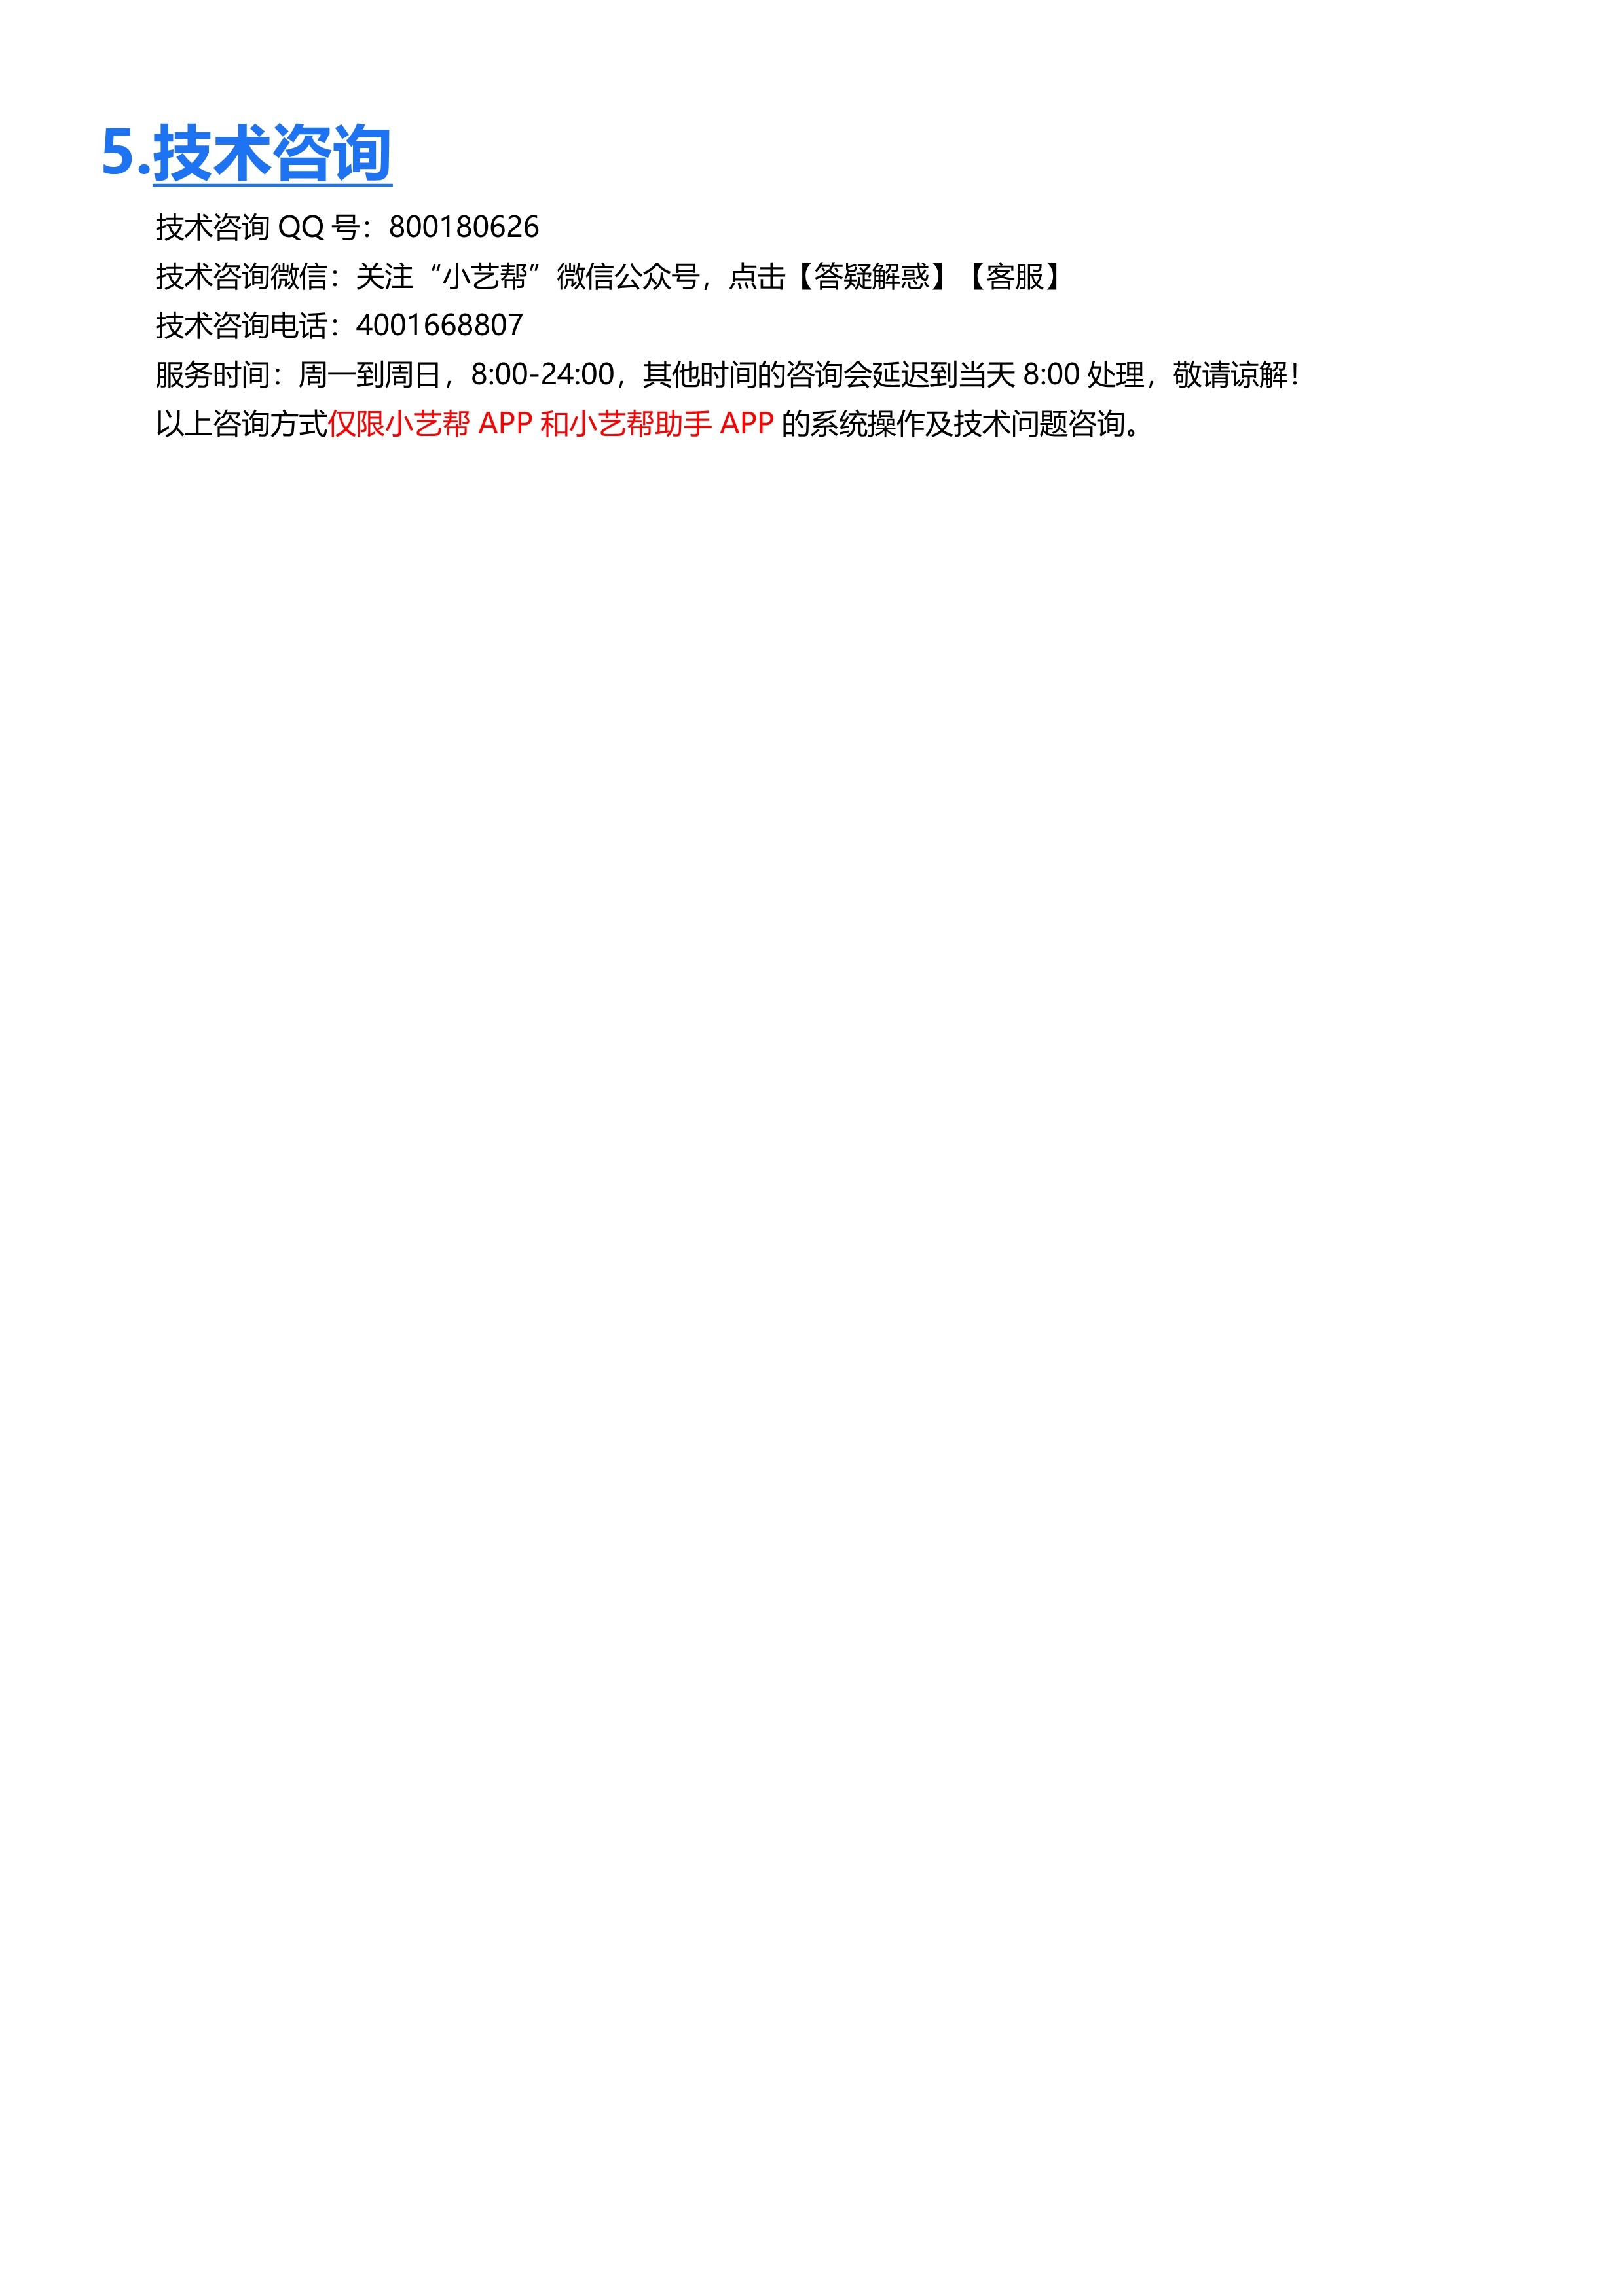 附件2：哈尔滨音乐学院2023年本科校考复试线上笔试小艺帮APP操作说明_14.jpg